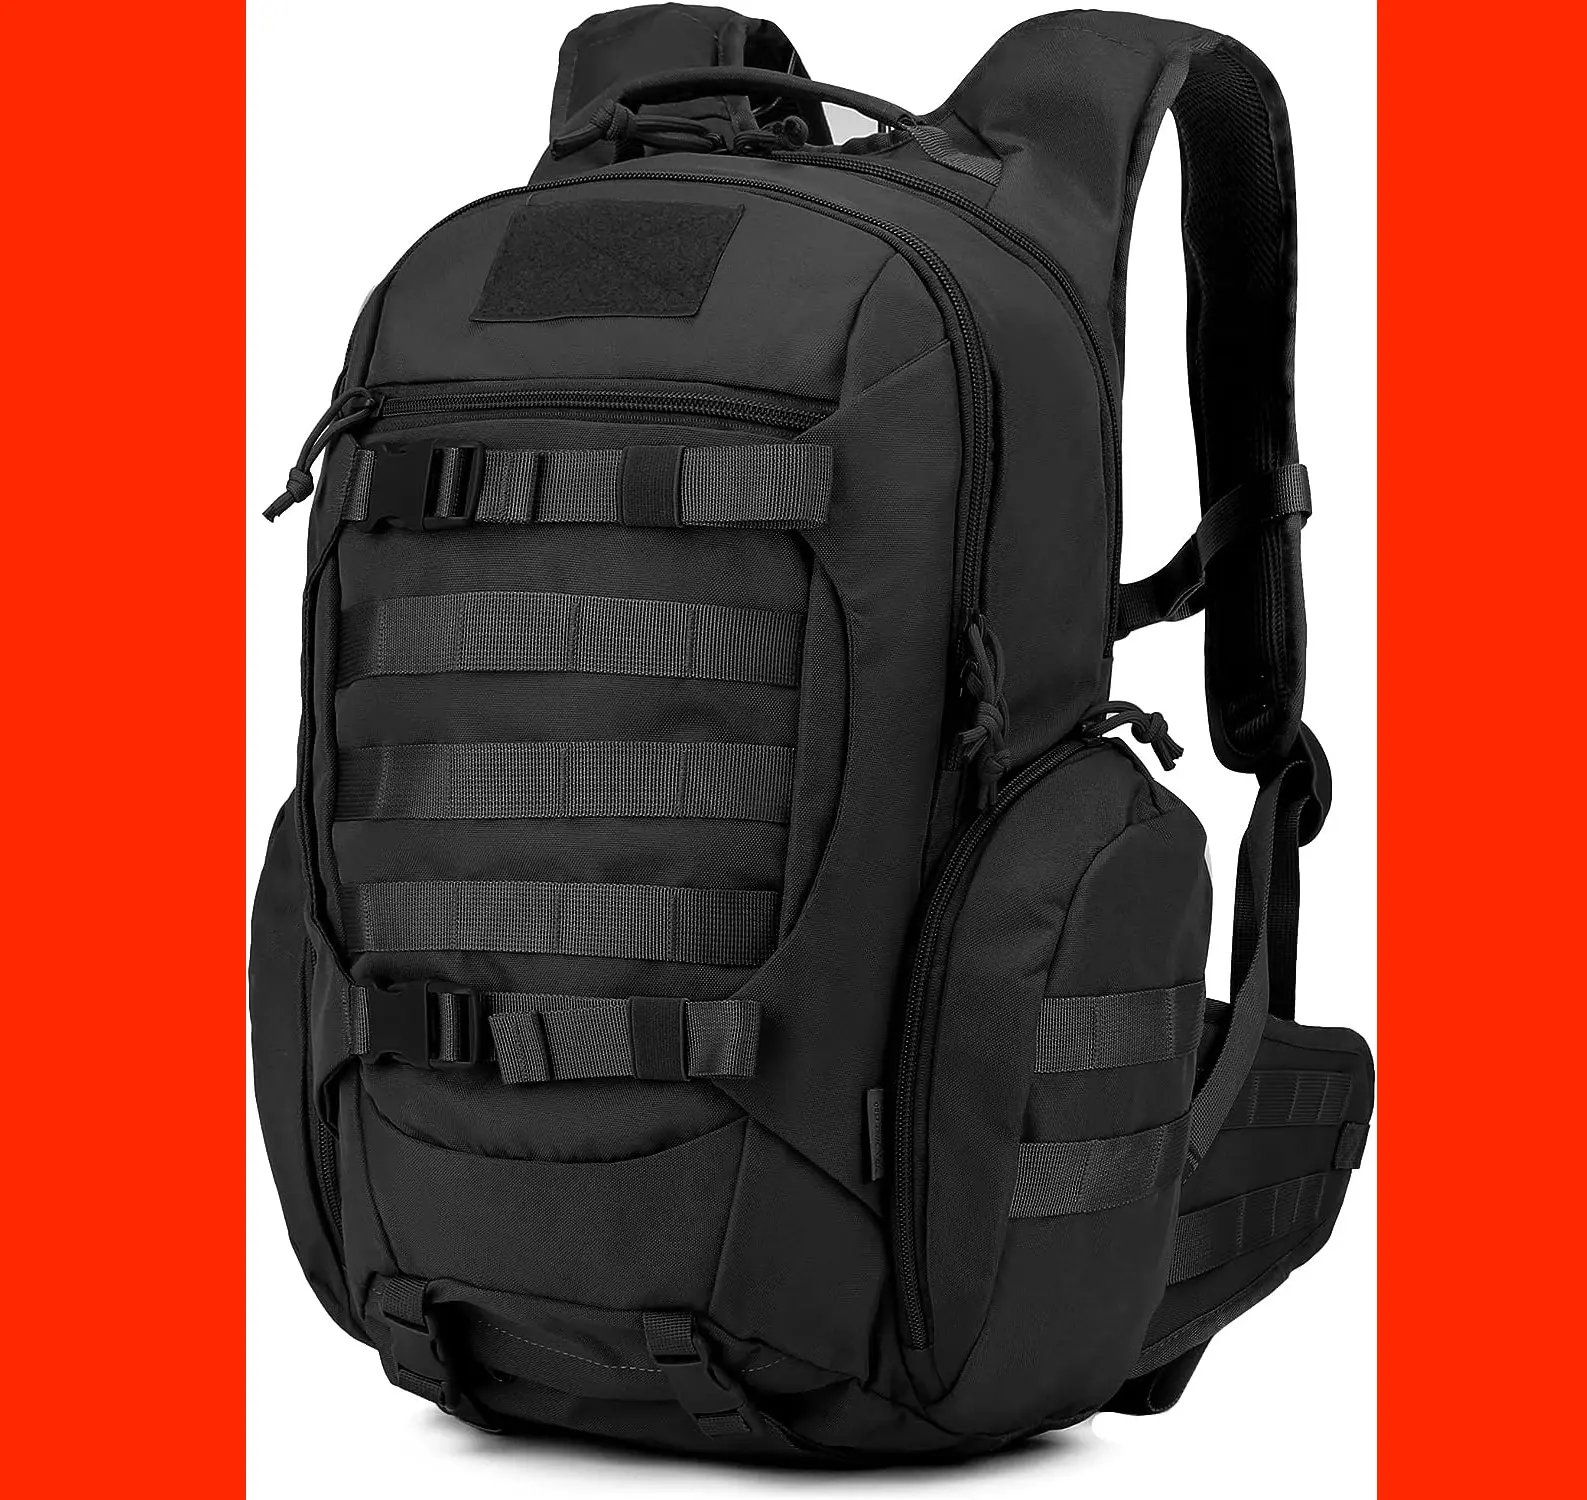 Trousse de premiers soins en nylon 600D noir Ifak Tactical Rip Away Utility EMT Medical Bag First Aid Molle Pouch